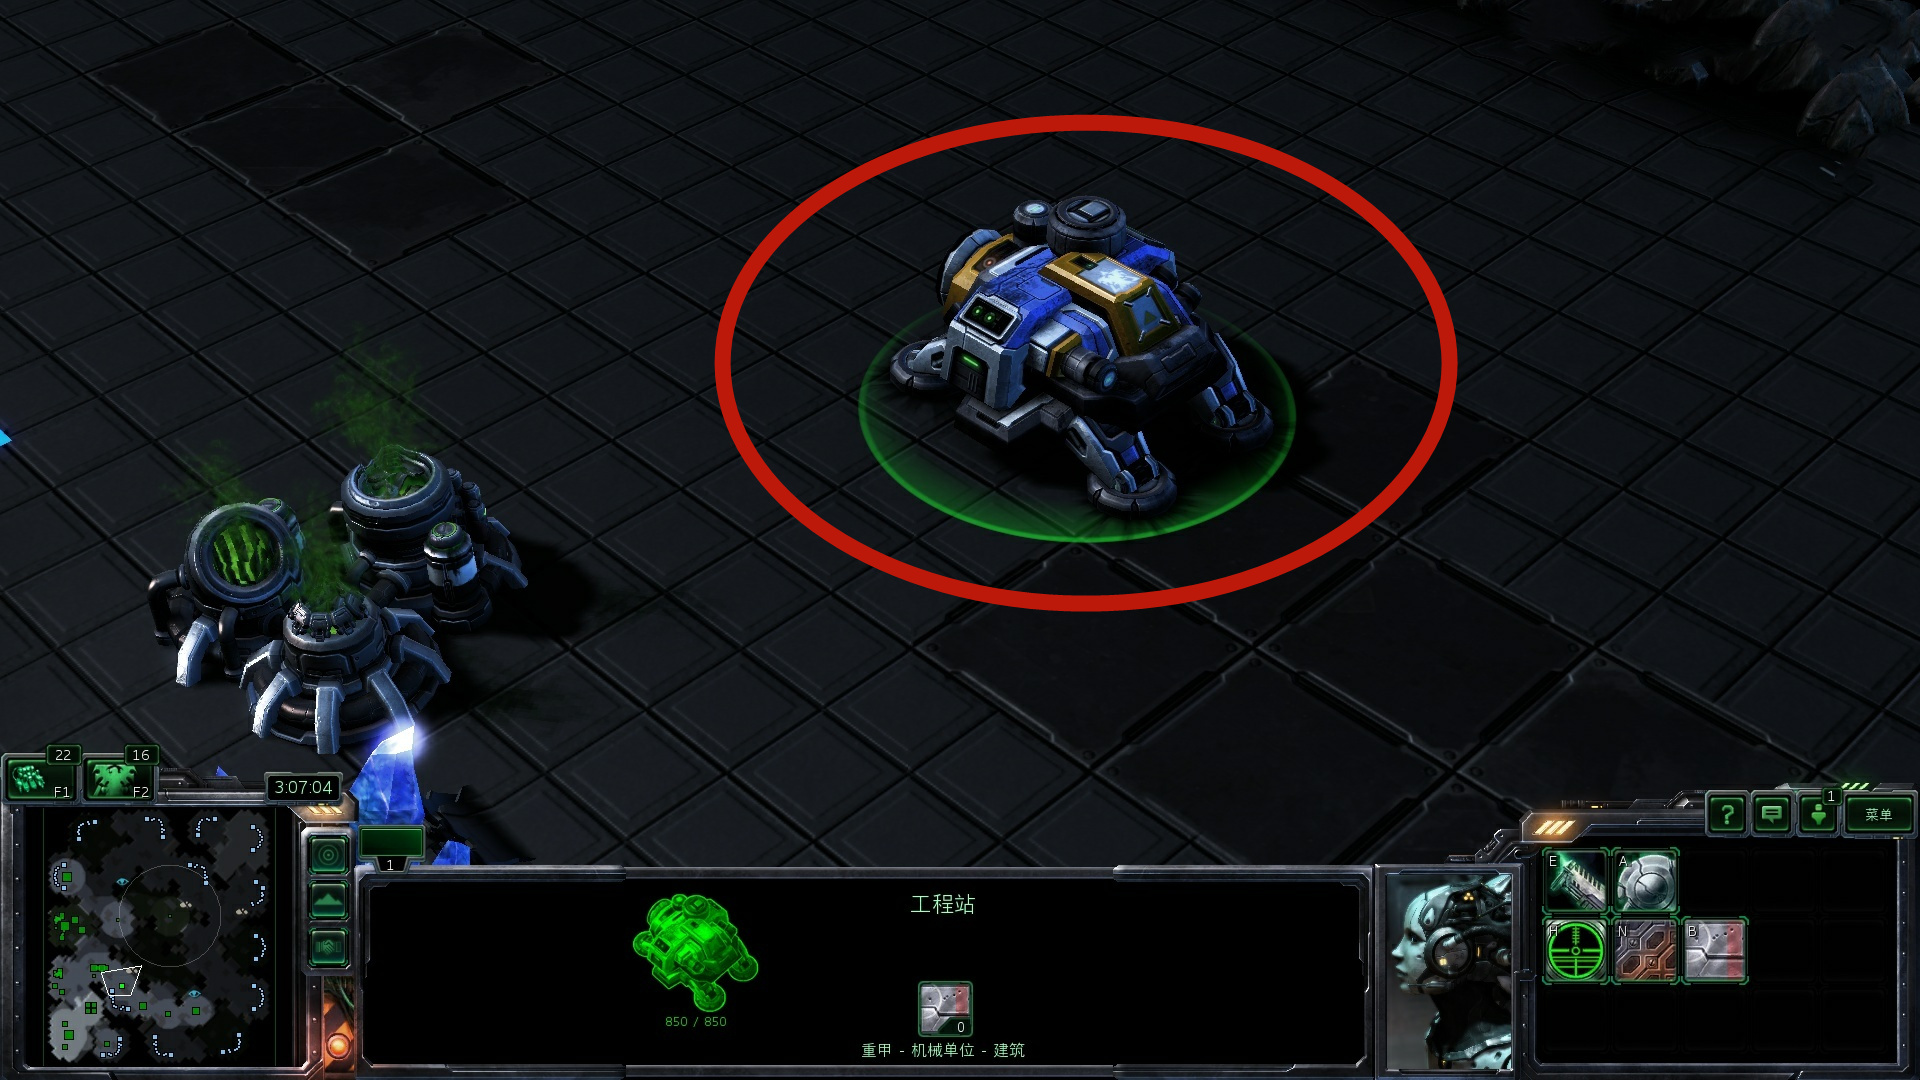 《星际争霸》官方CG把玩家给骗了，攻城坦克真的挡不住虫群吗？